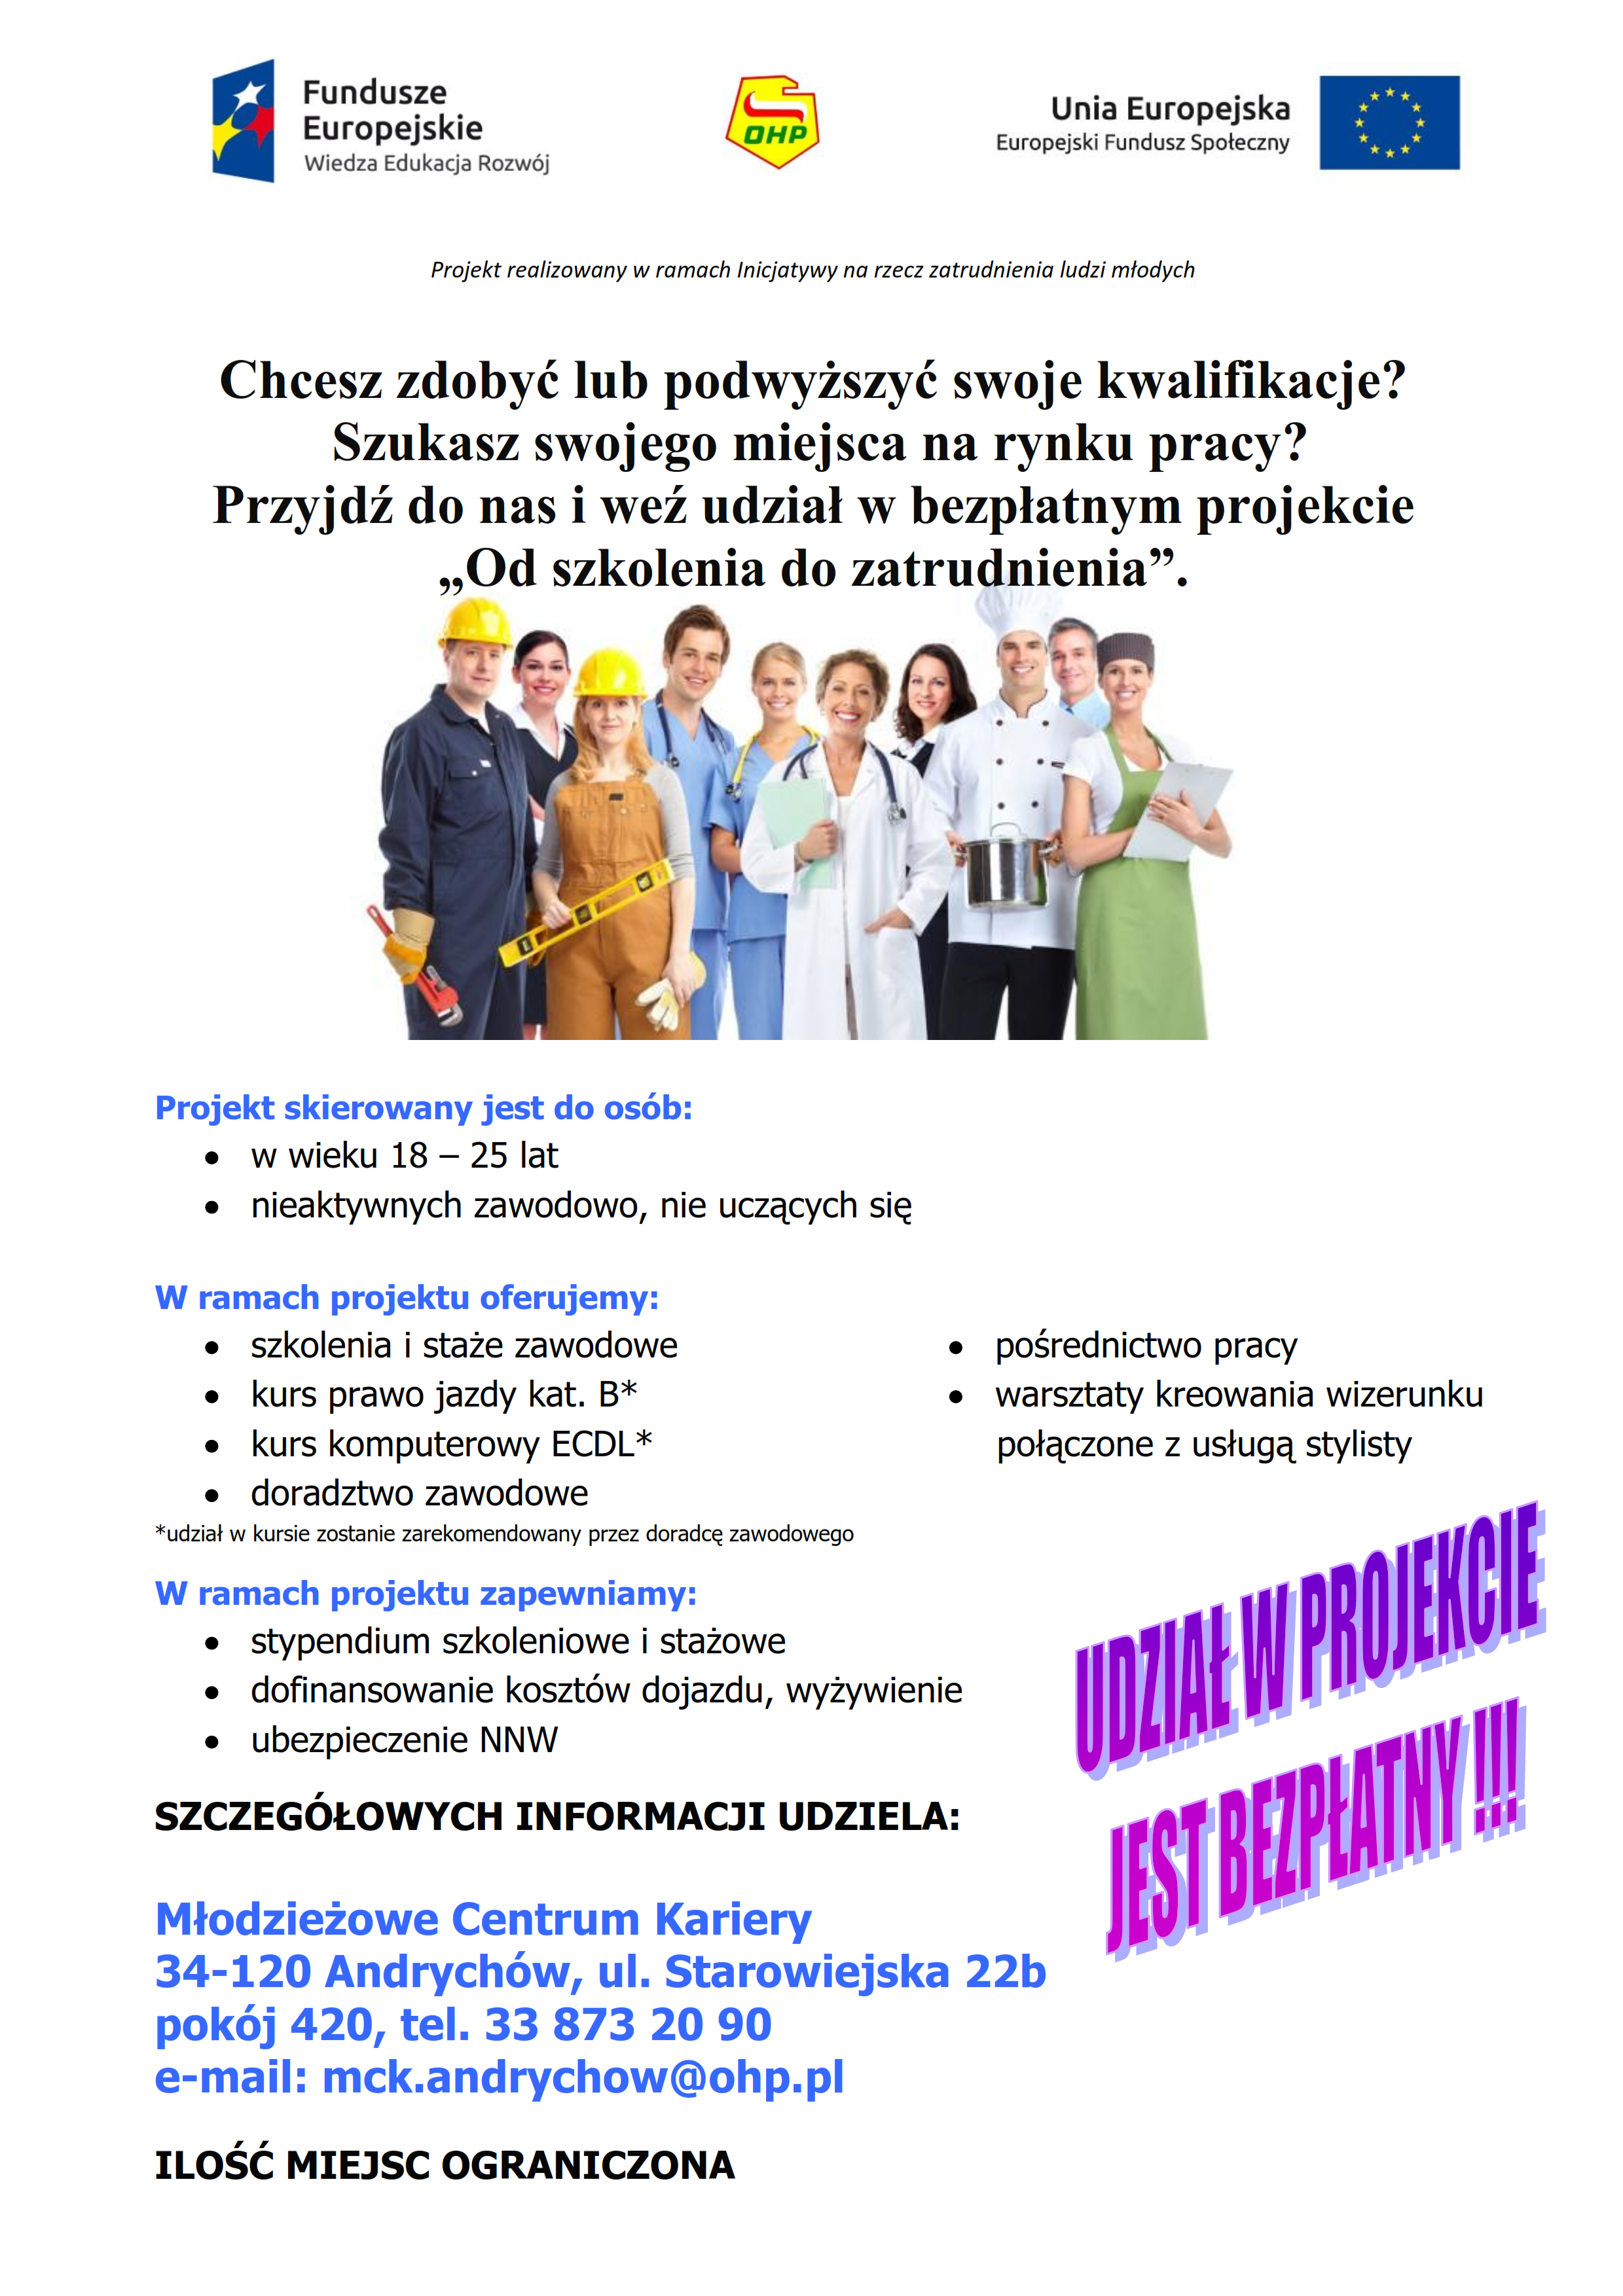 Plakat projektu od szkolenia do zatrudnienia